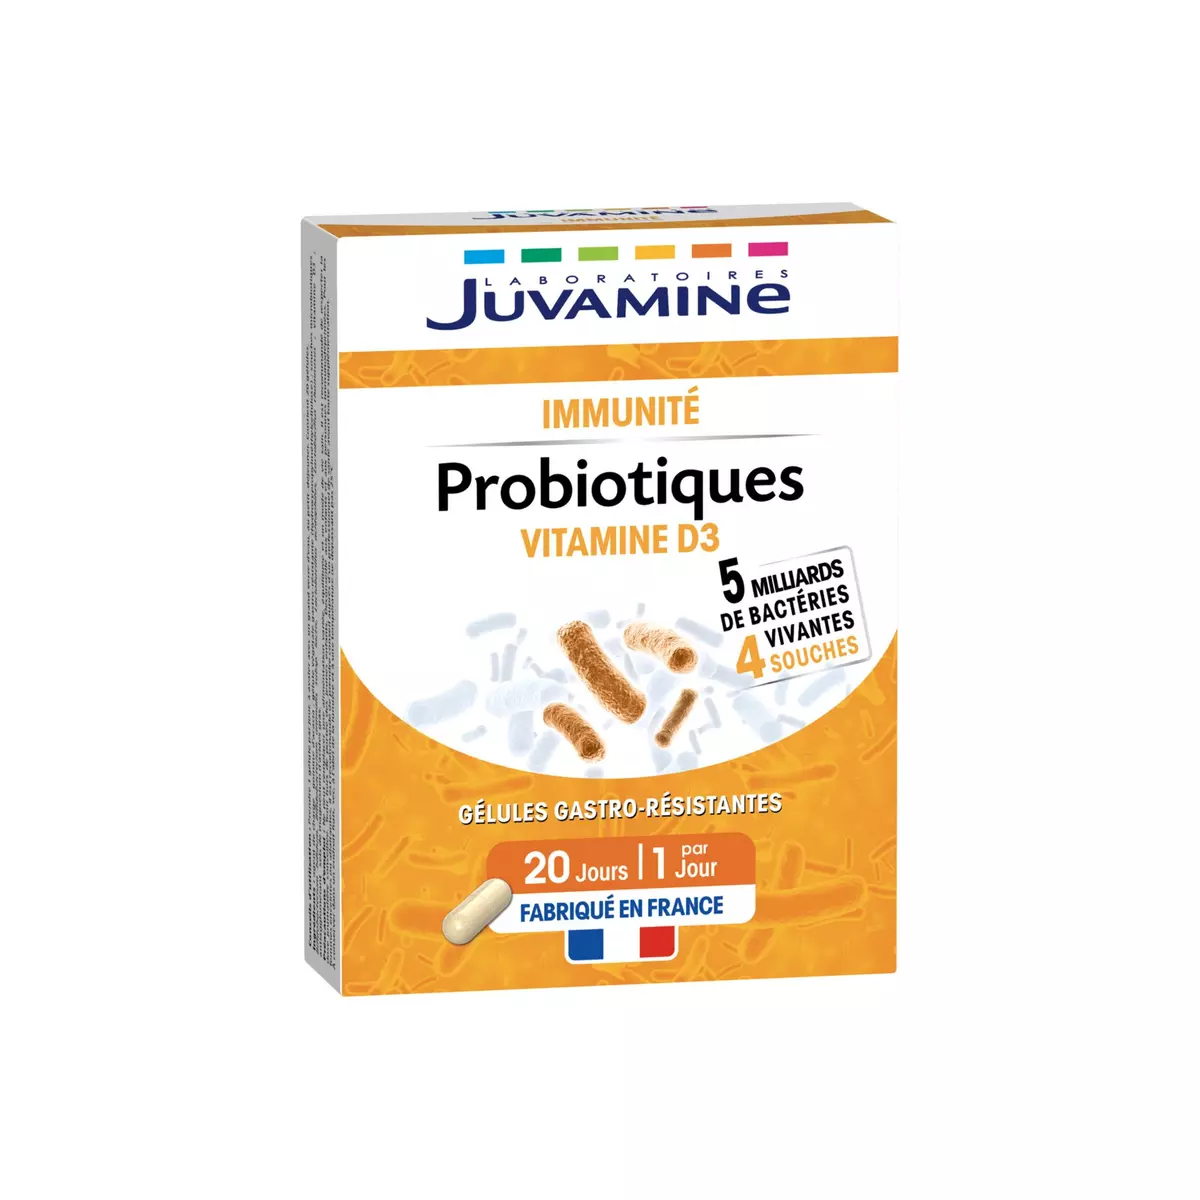 JUVAMINE Gélules gastro-résistantes Probiotiques immunité vitamine D3 20 gélules